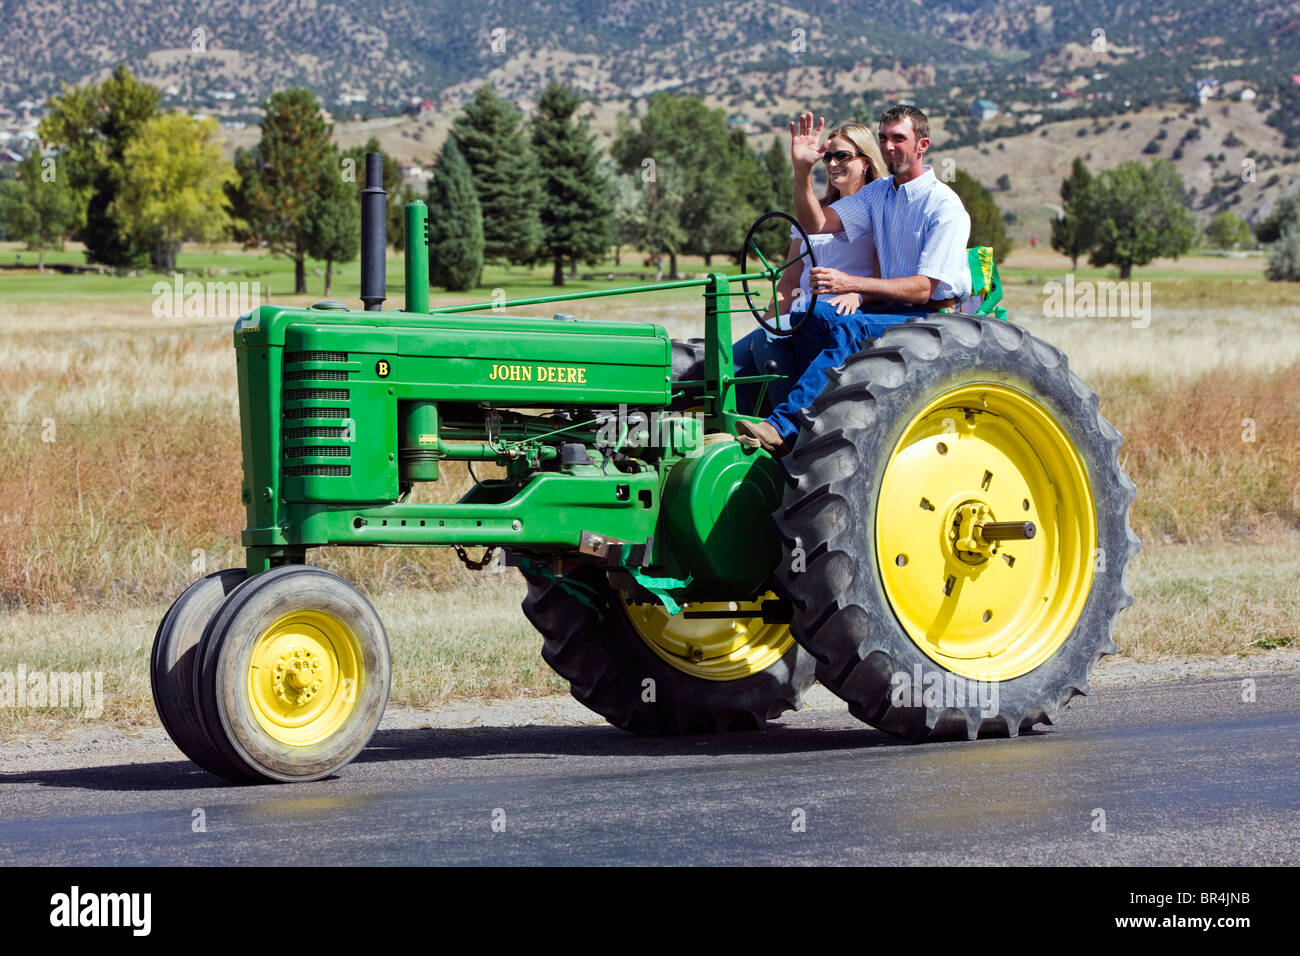 Newlywed couple marié à cheval sur un tracteur dans leur cortège nuptial de l'église à la réception, Salida, Colorado Banque D'Images